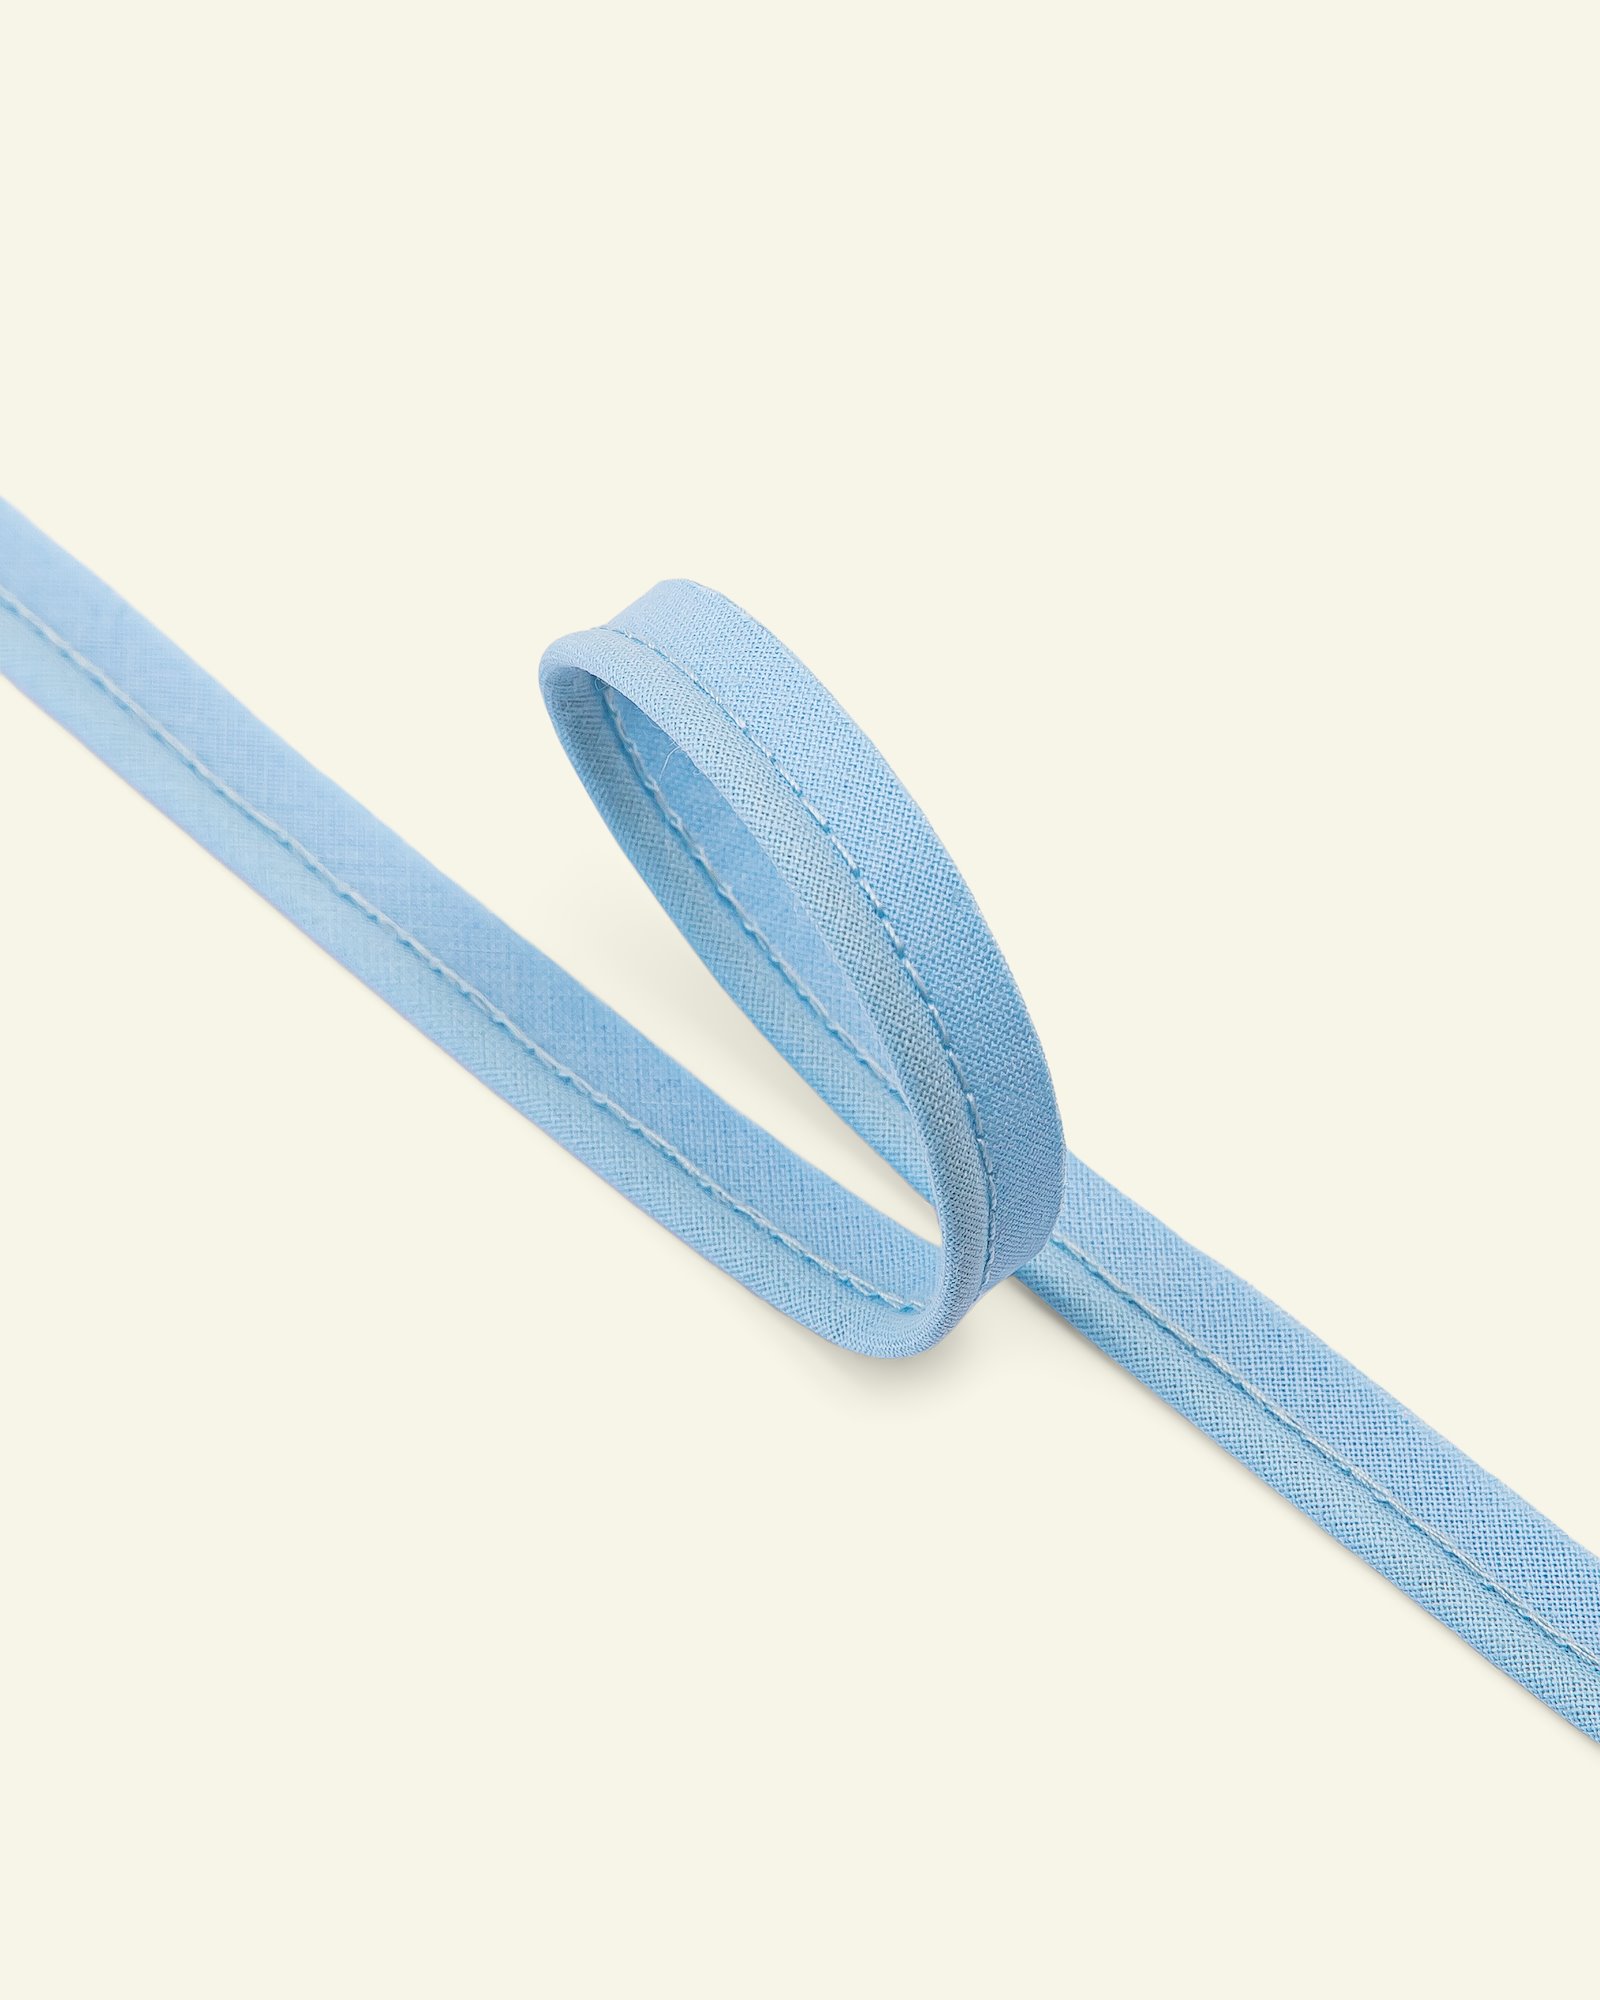 Pipingbånd bomuld 4mm lys blå 5m 71019_pack